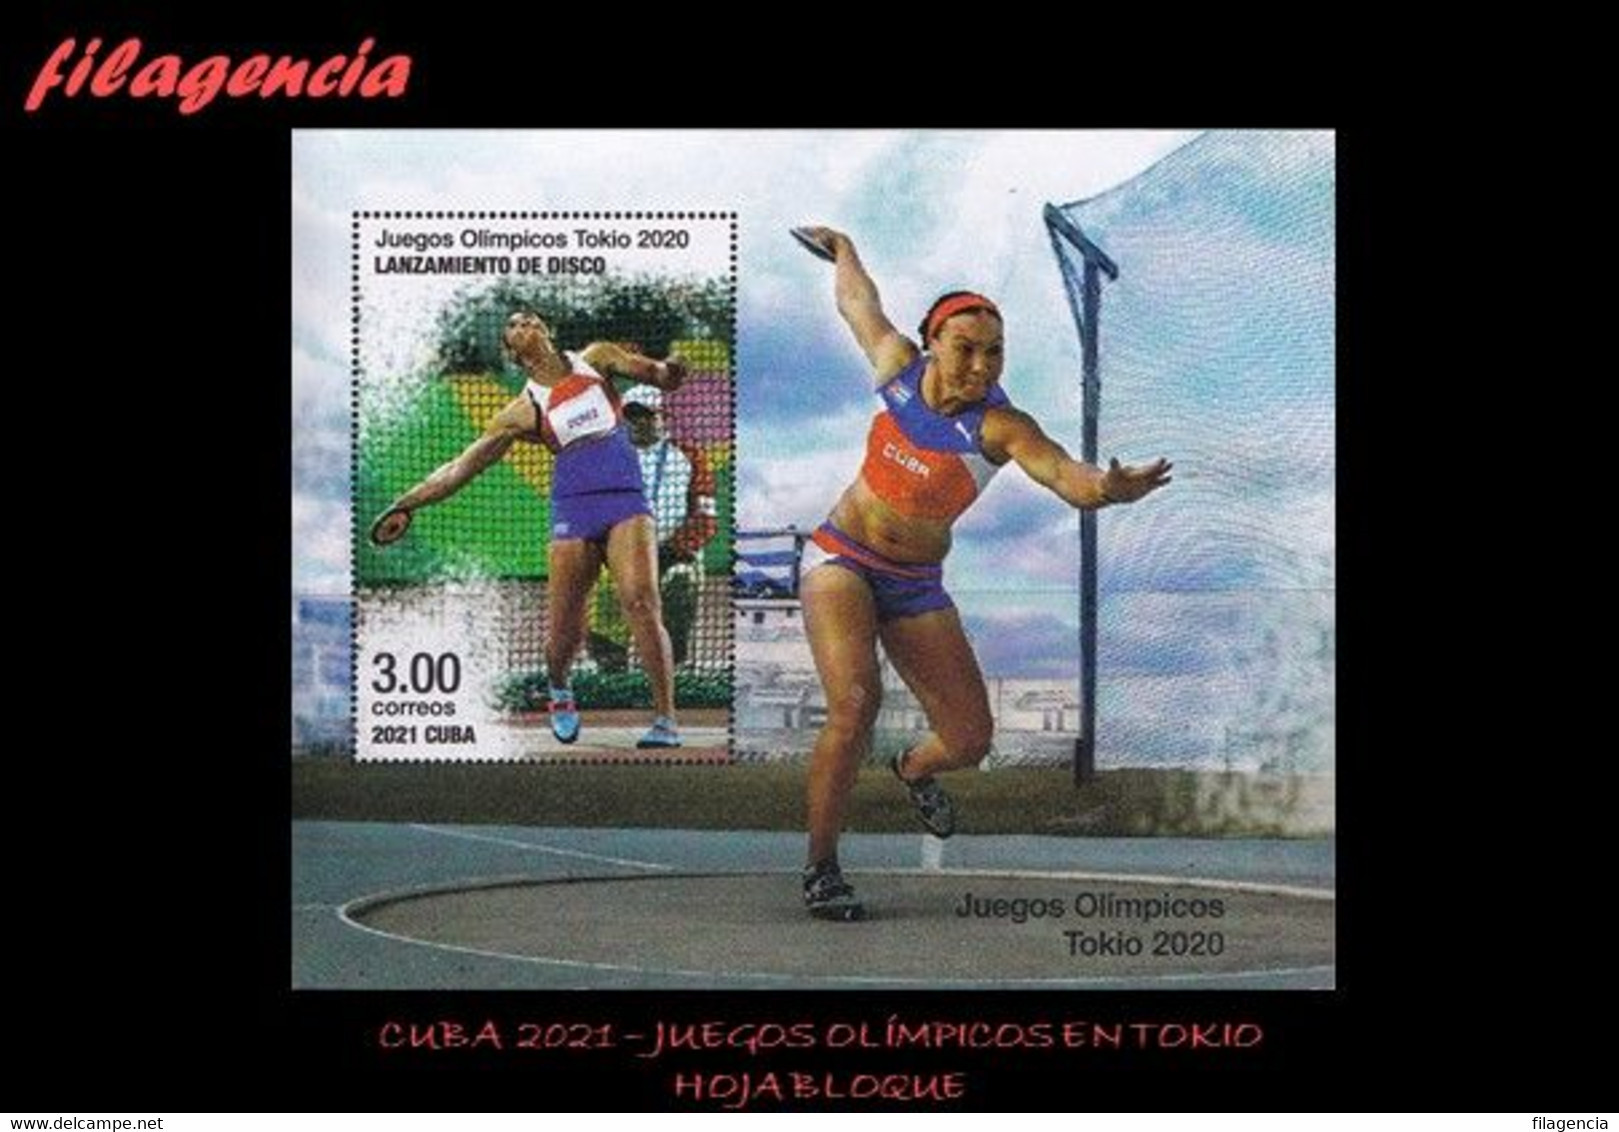 AMERICA. CUBA MINT. 2021 JUEGOS OLÍMPICOS EN TOKIO. HOJA BLOQUE - Neufs